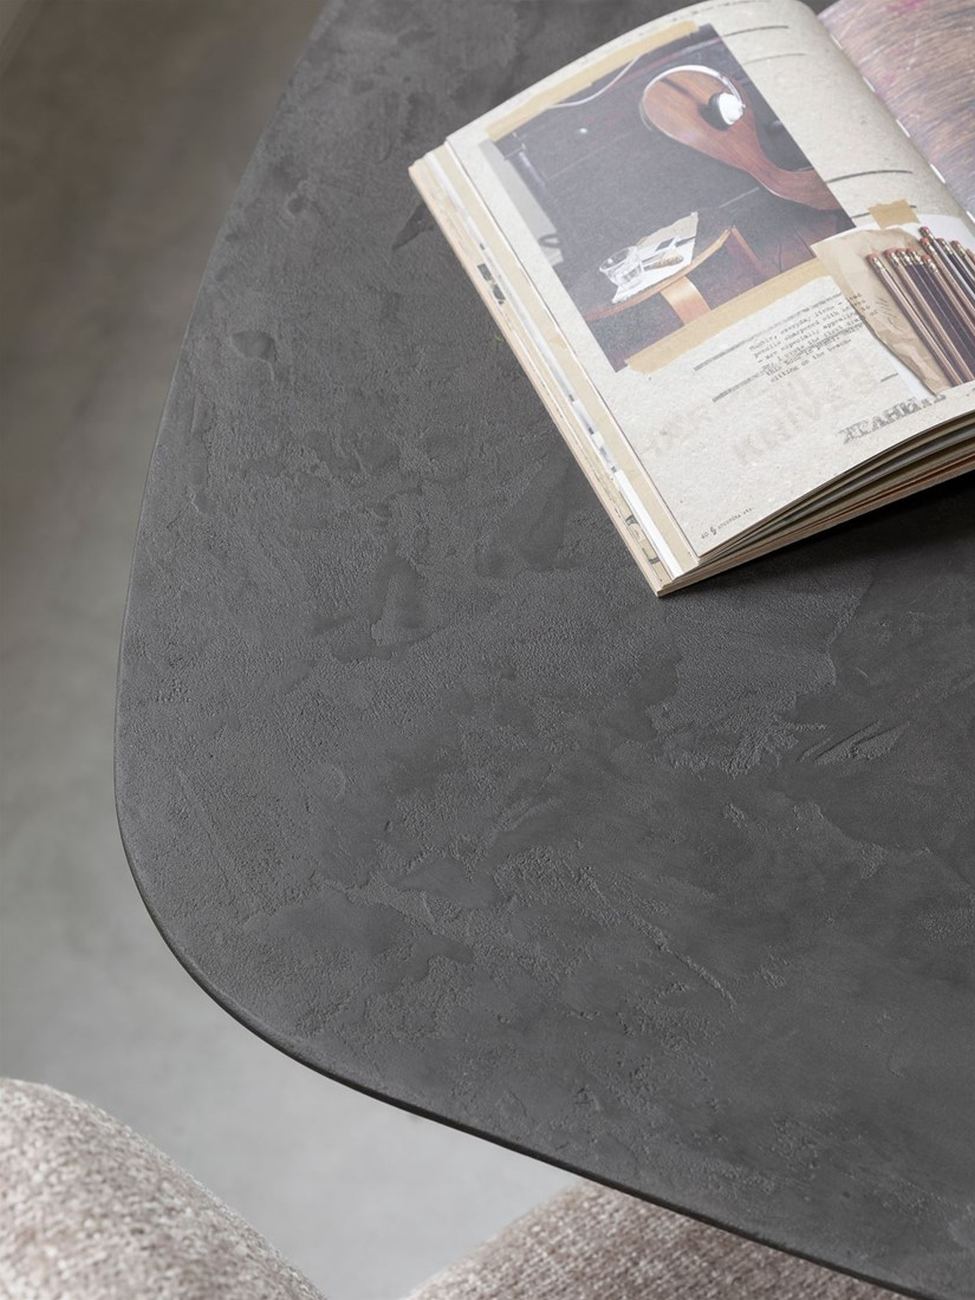 Der Esstisch Soho überzeugt mit seinem modernen Design. Gefertigt wurde es aus recyceltem Teakholz, welches einen schwarzen Farbton besitzt. Das Gestell ist aus Metall und hat eine schwarze Farbe. Der Esstisch besitzt eine Breite von 210 cm.